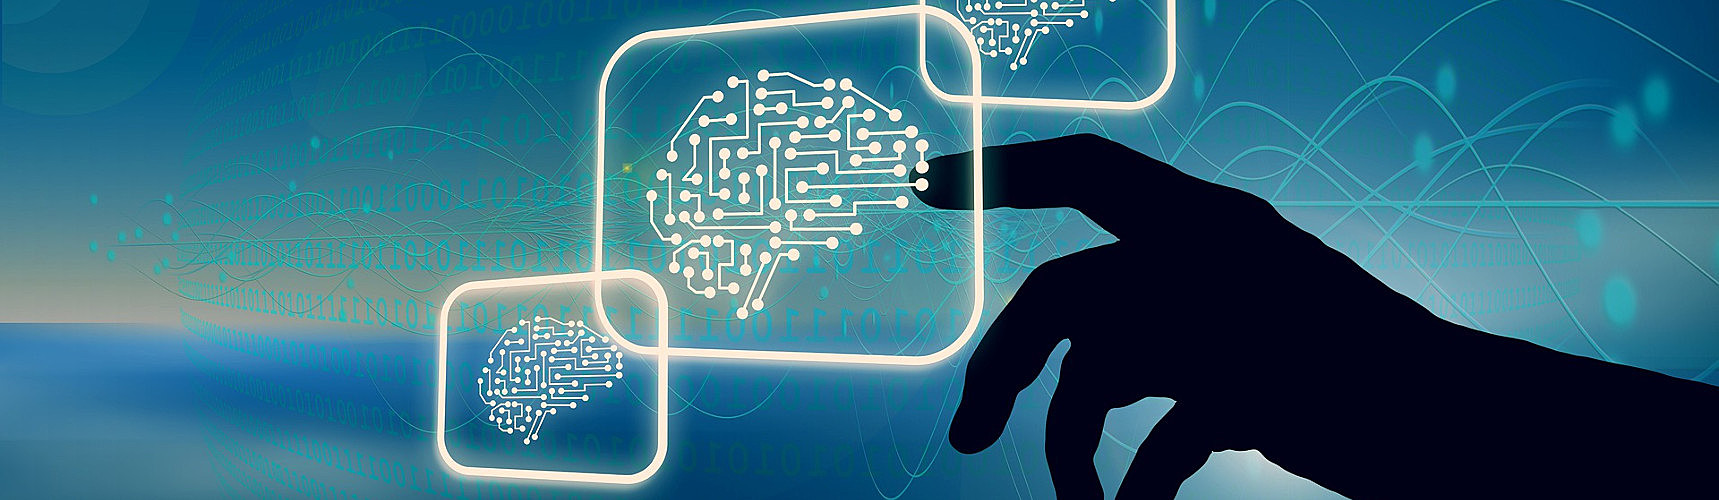 Inteligência artificial na logística: em primeiro plano há um ícone ou avatar de um cérebro humano sendo tocado por uma silhueta de mão humana